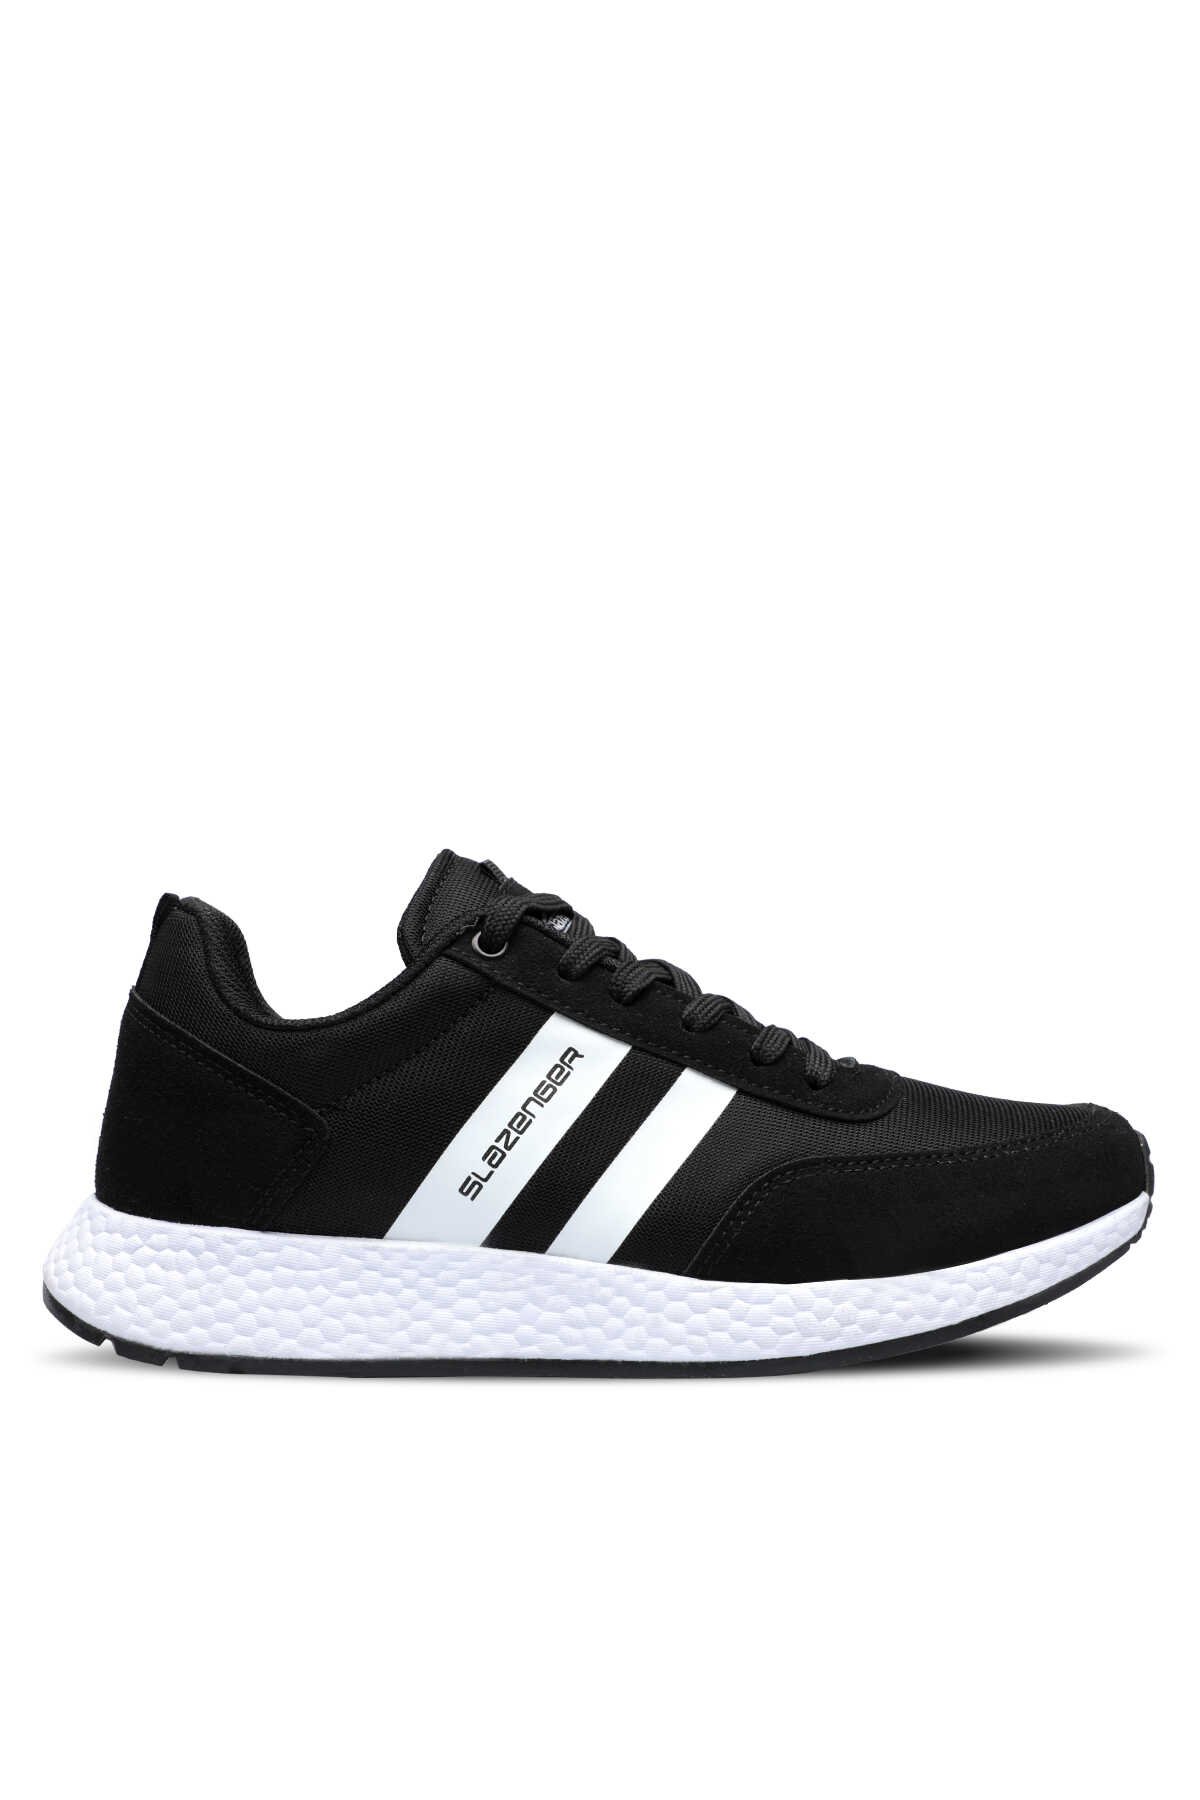 Slazenger - Slazenger ZAAL Sneaker Erkek Ayakkabı Siyah / Beyaz